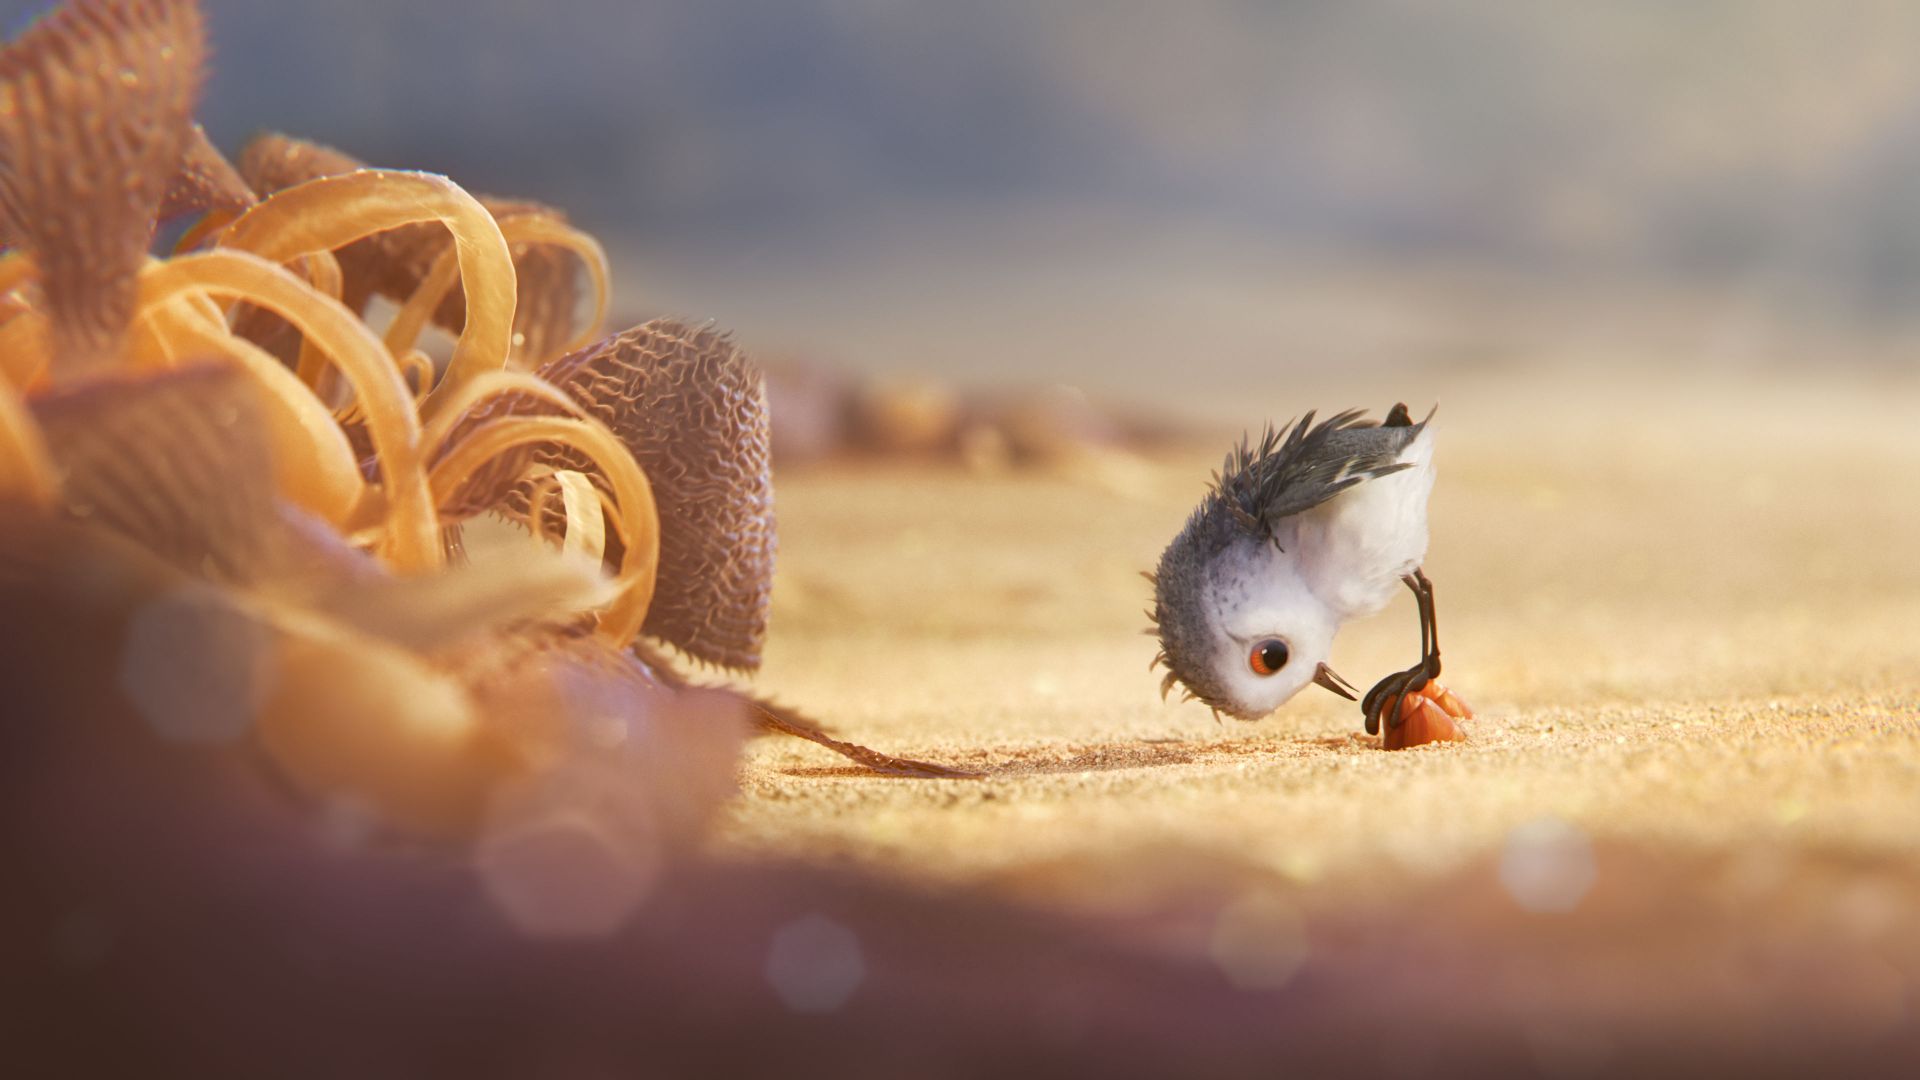 Wallpaper Pixar piper short animation movie